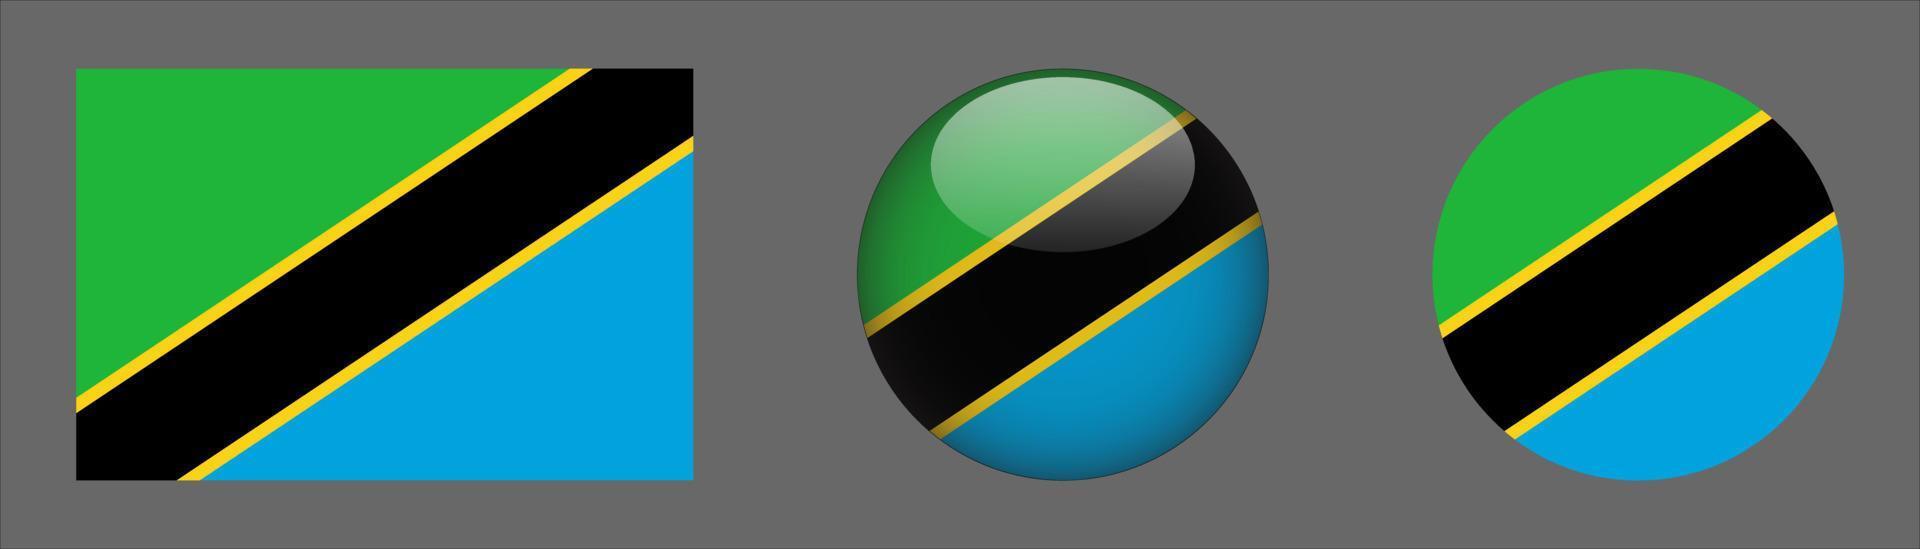 tanzania flaggset samling, originalstorleksförhållande, 3d rundad och platt rundad. vektor